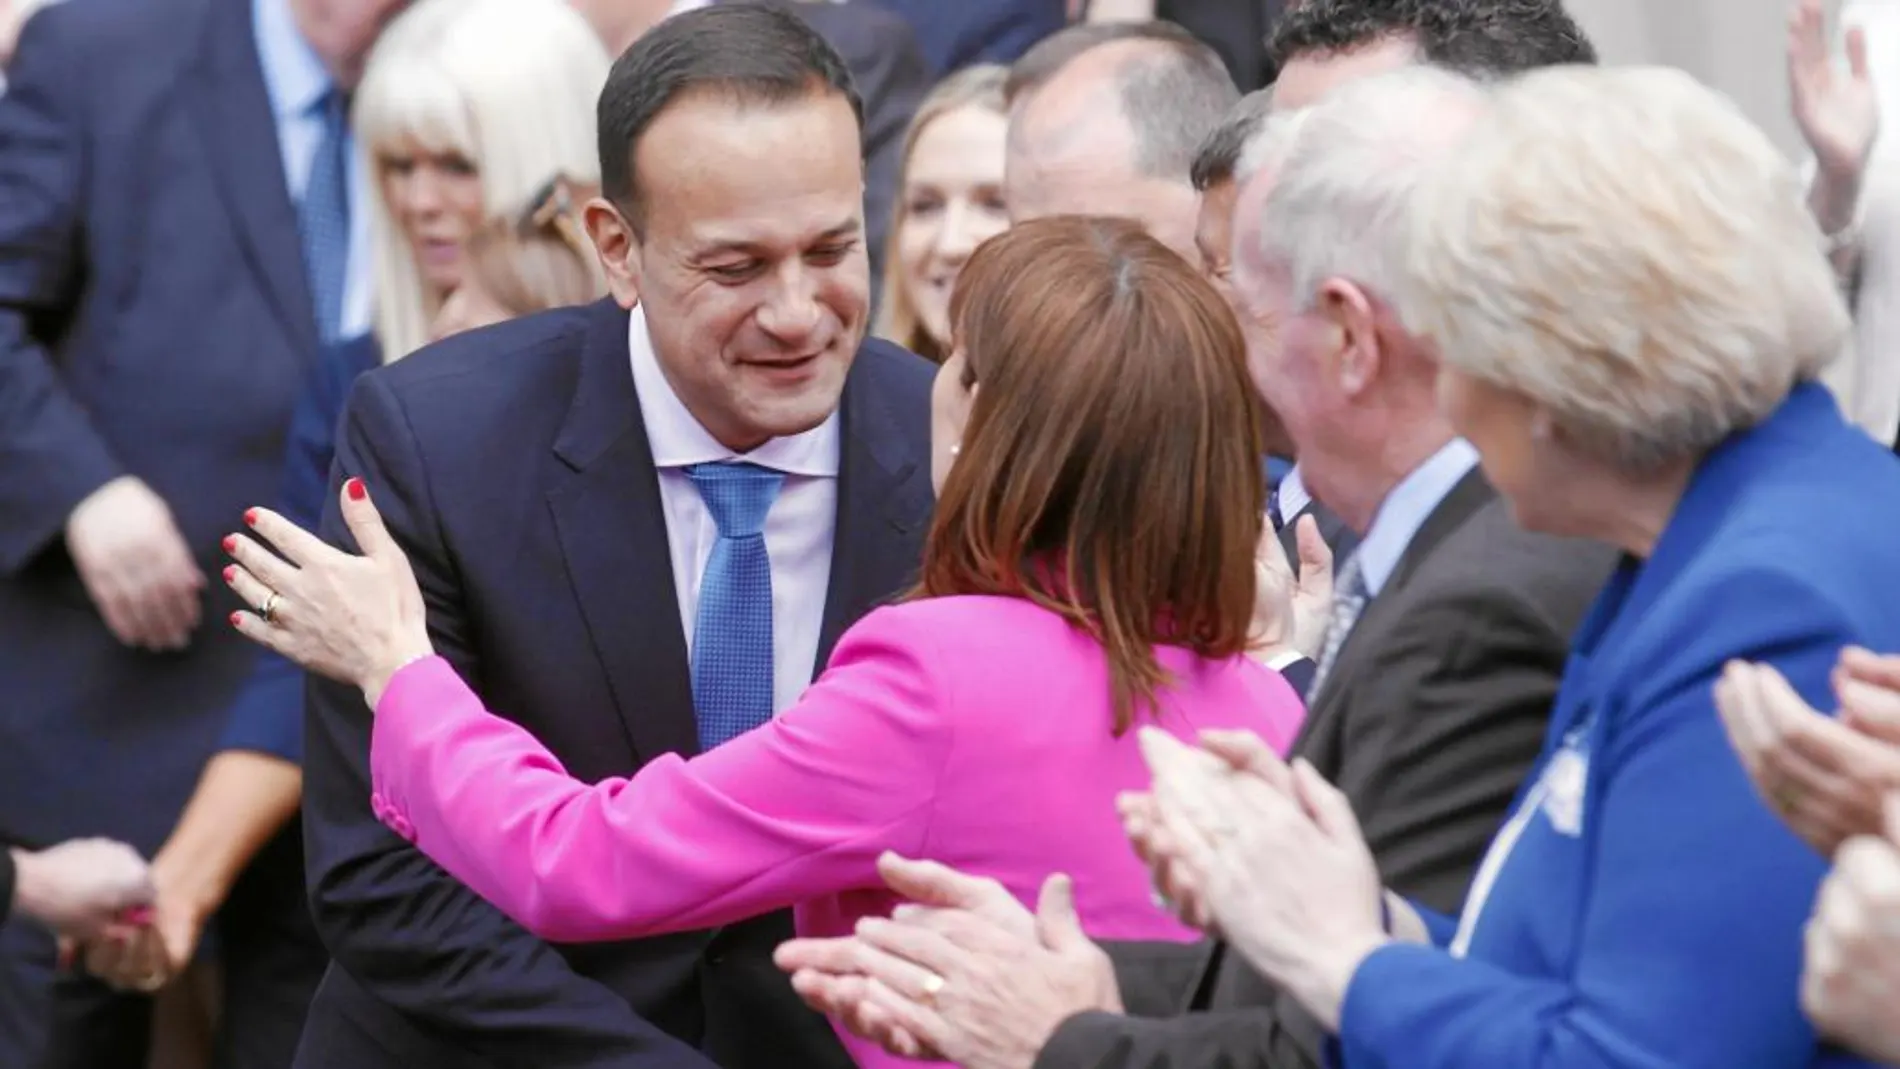 Los diputados felicitan a Leo Varadkar tras su elección ayer como primer ministro de Irlanda por la Cámara Baja